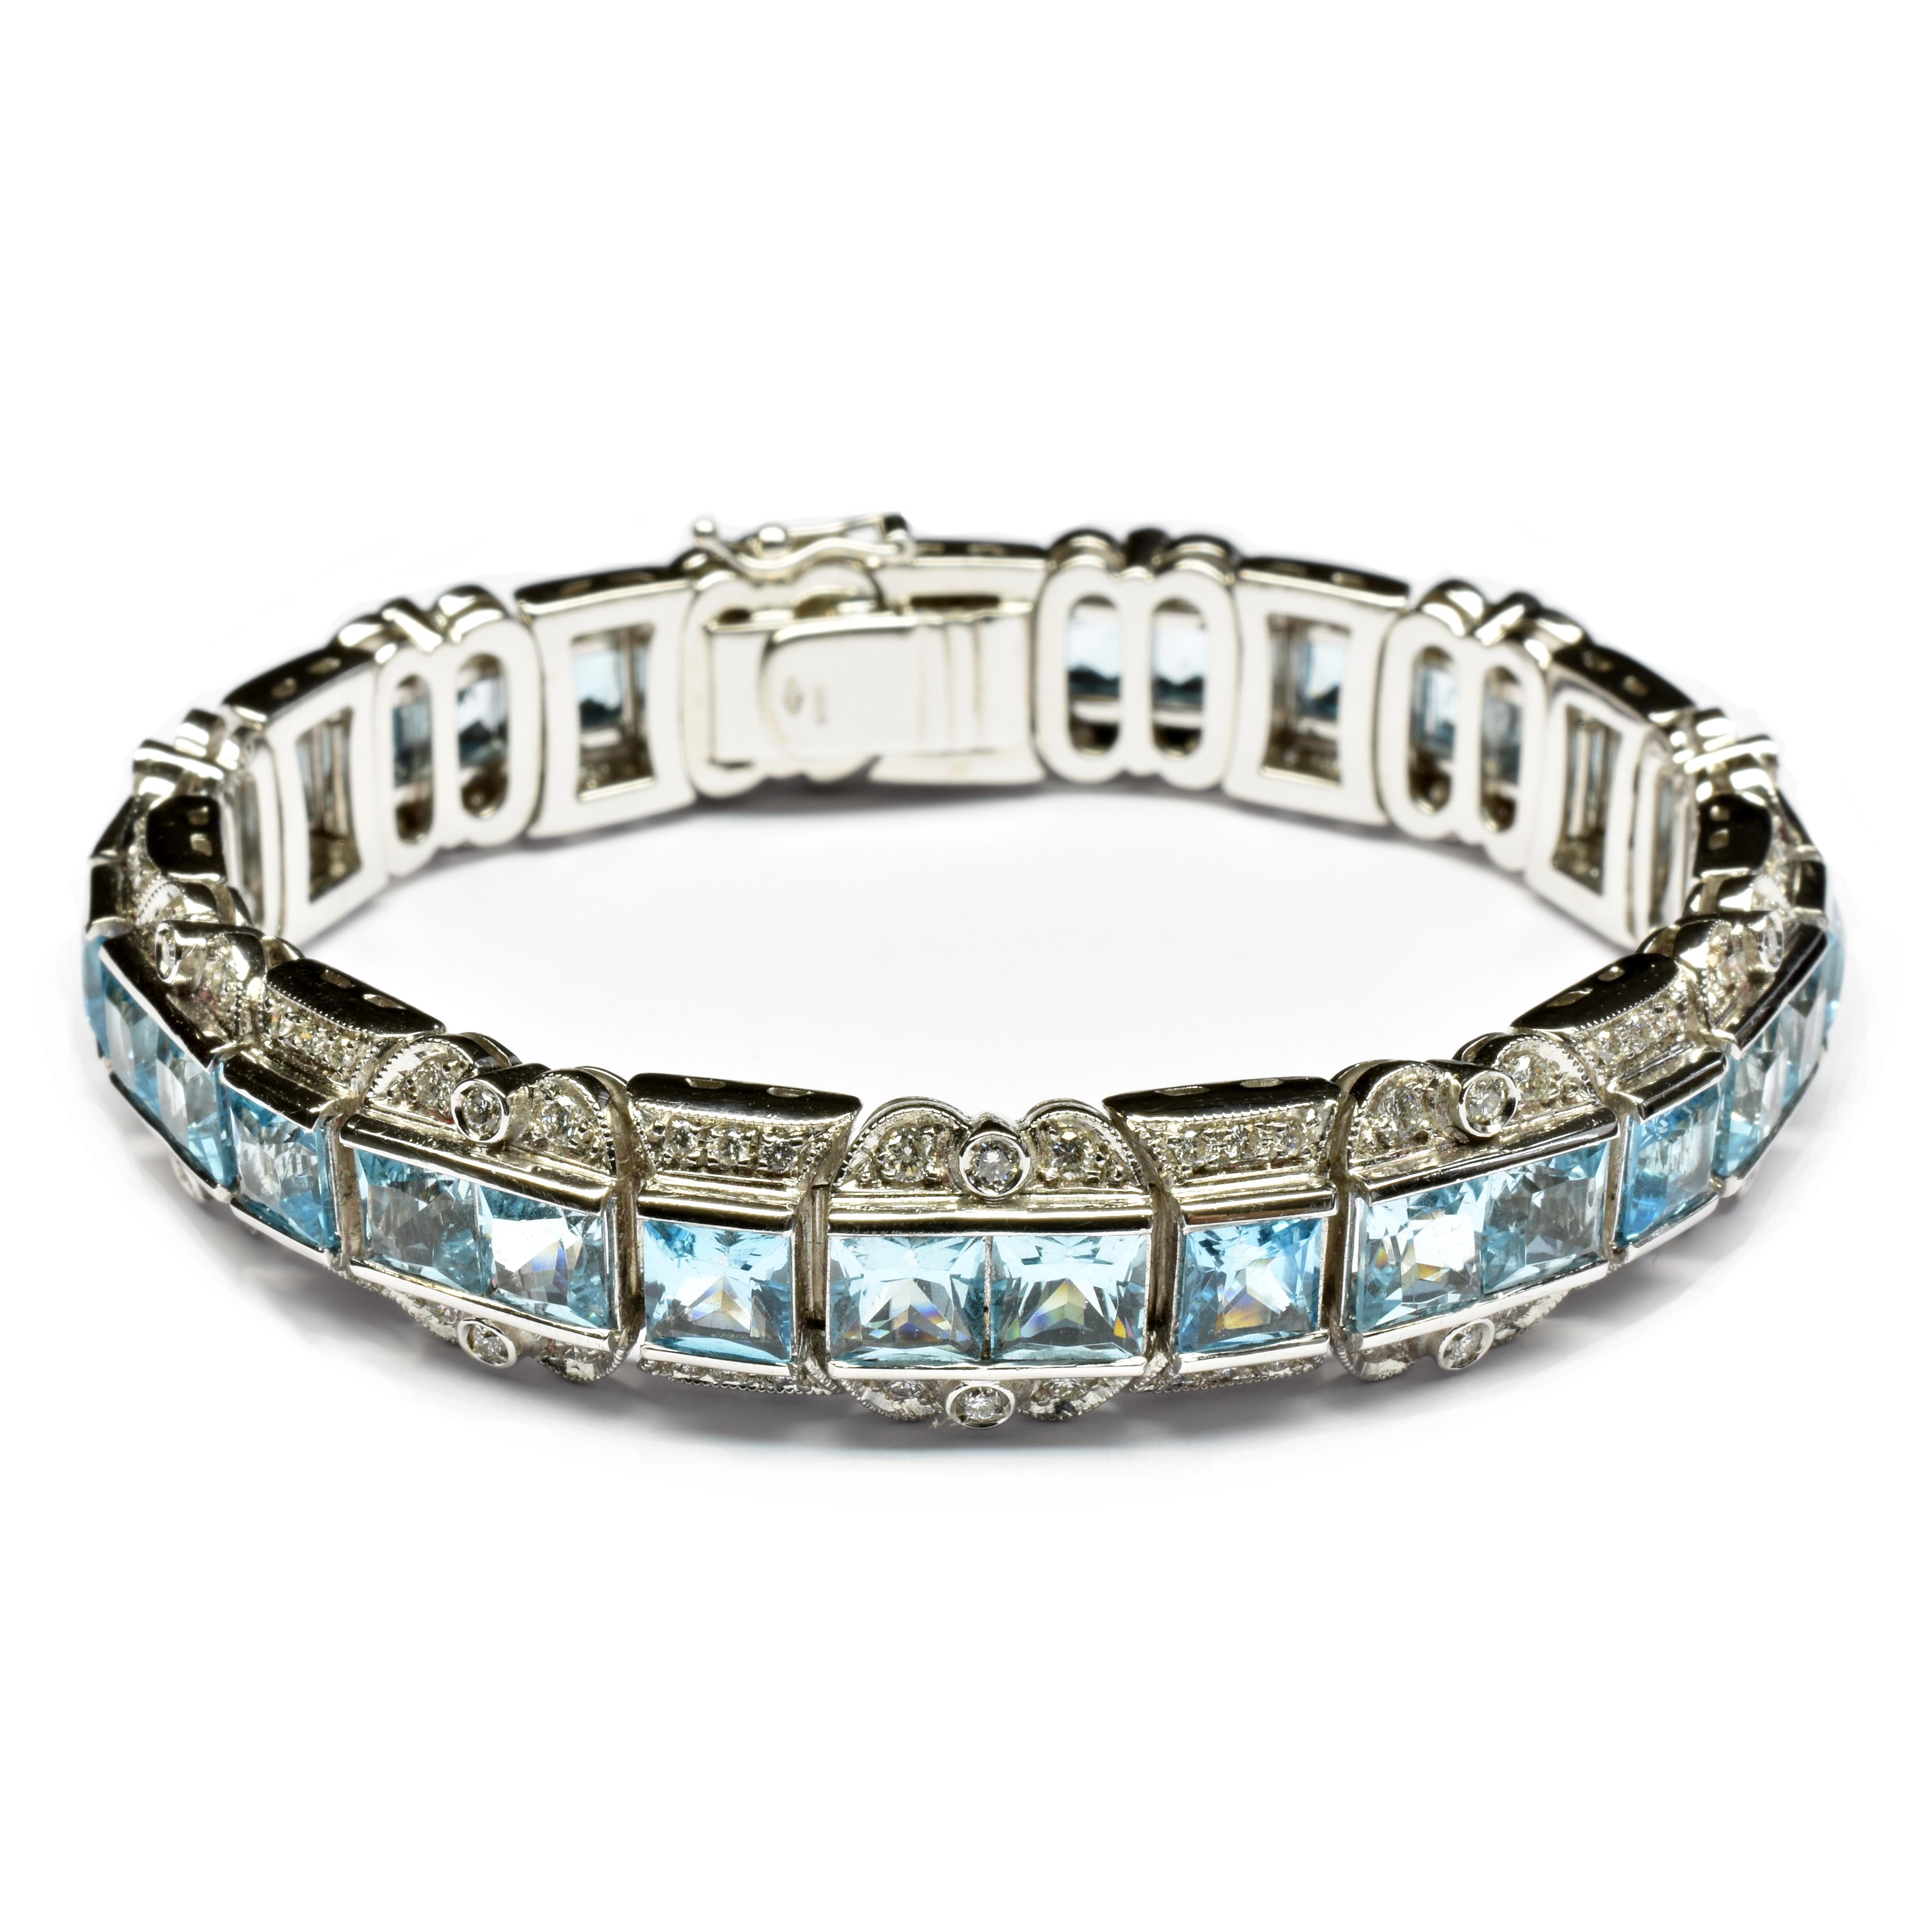 Gilberto Cassola Armband aus 18 Kt Weißgold mit blauem Topas im Prinzessinnenschliff und weißen Diamanten.
Die Diamanten sind mit Milgrain-Fassungen versehen, die diesem einzigartigen Armband einen sehr eleganten und stilvollen Art Decò-Stil